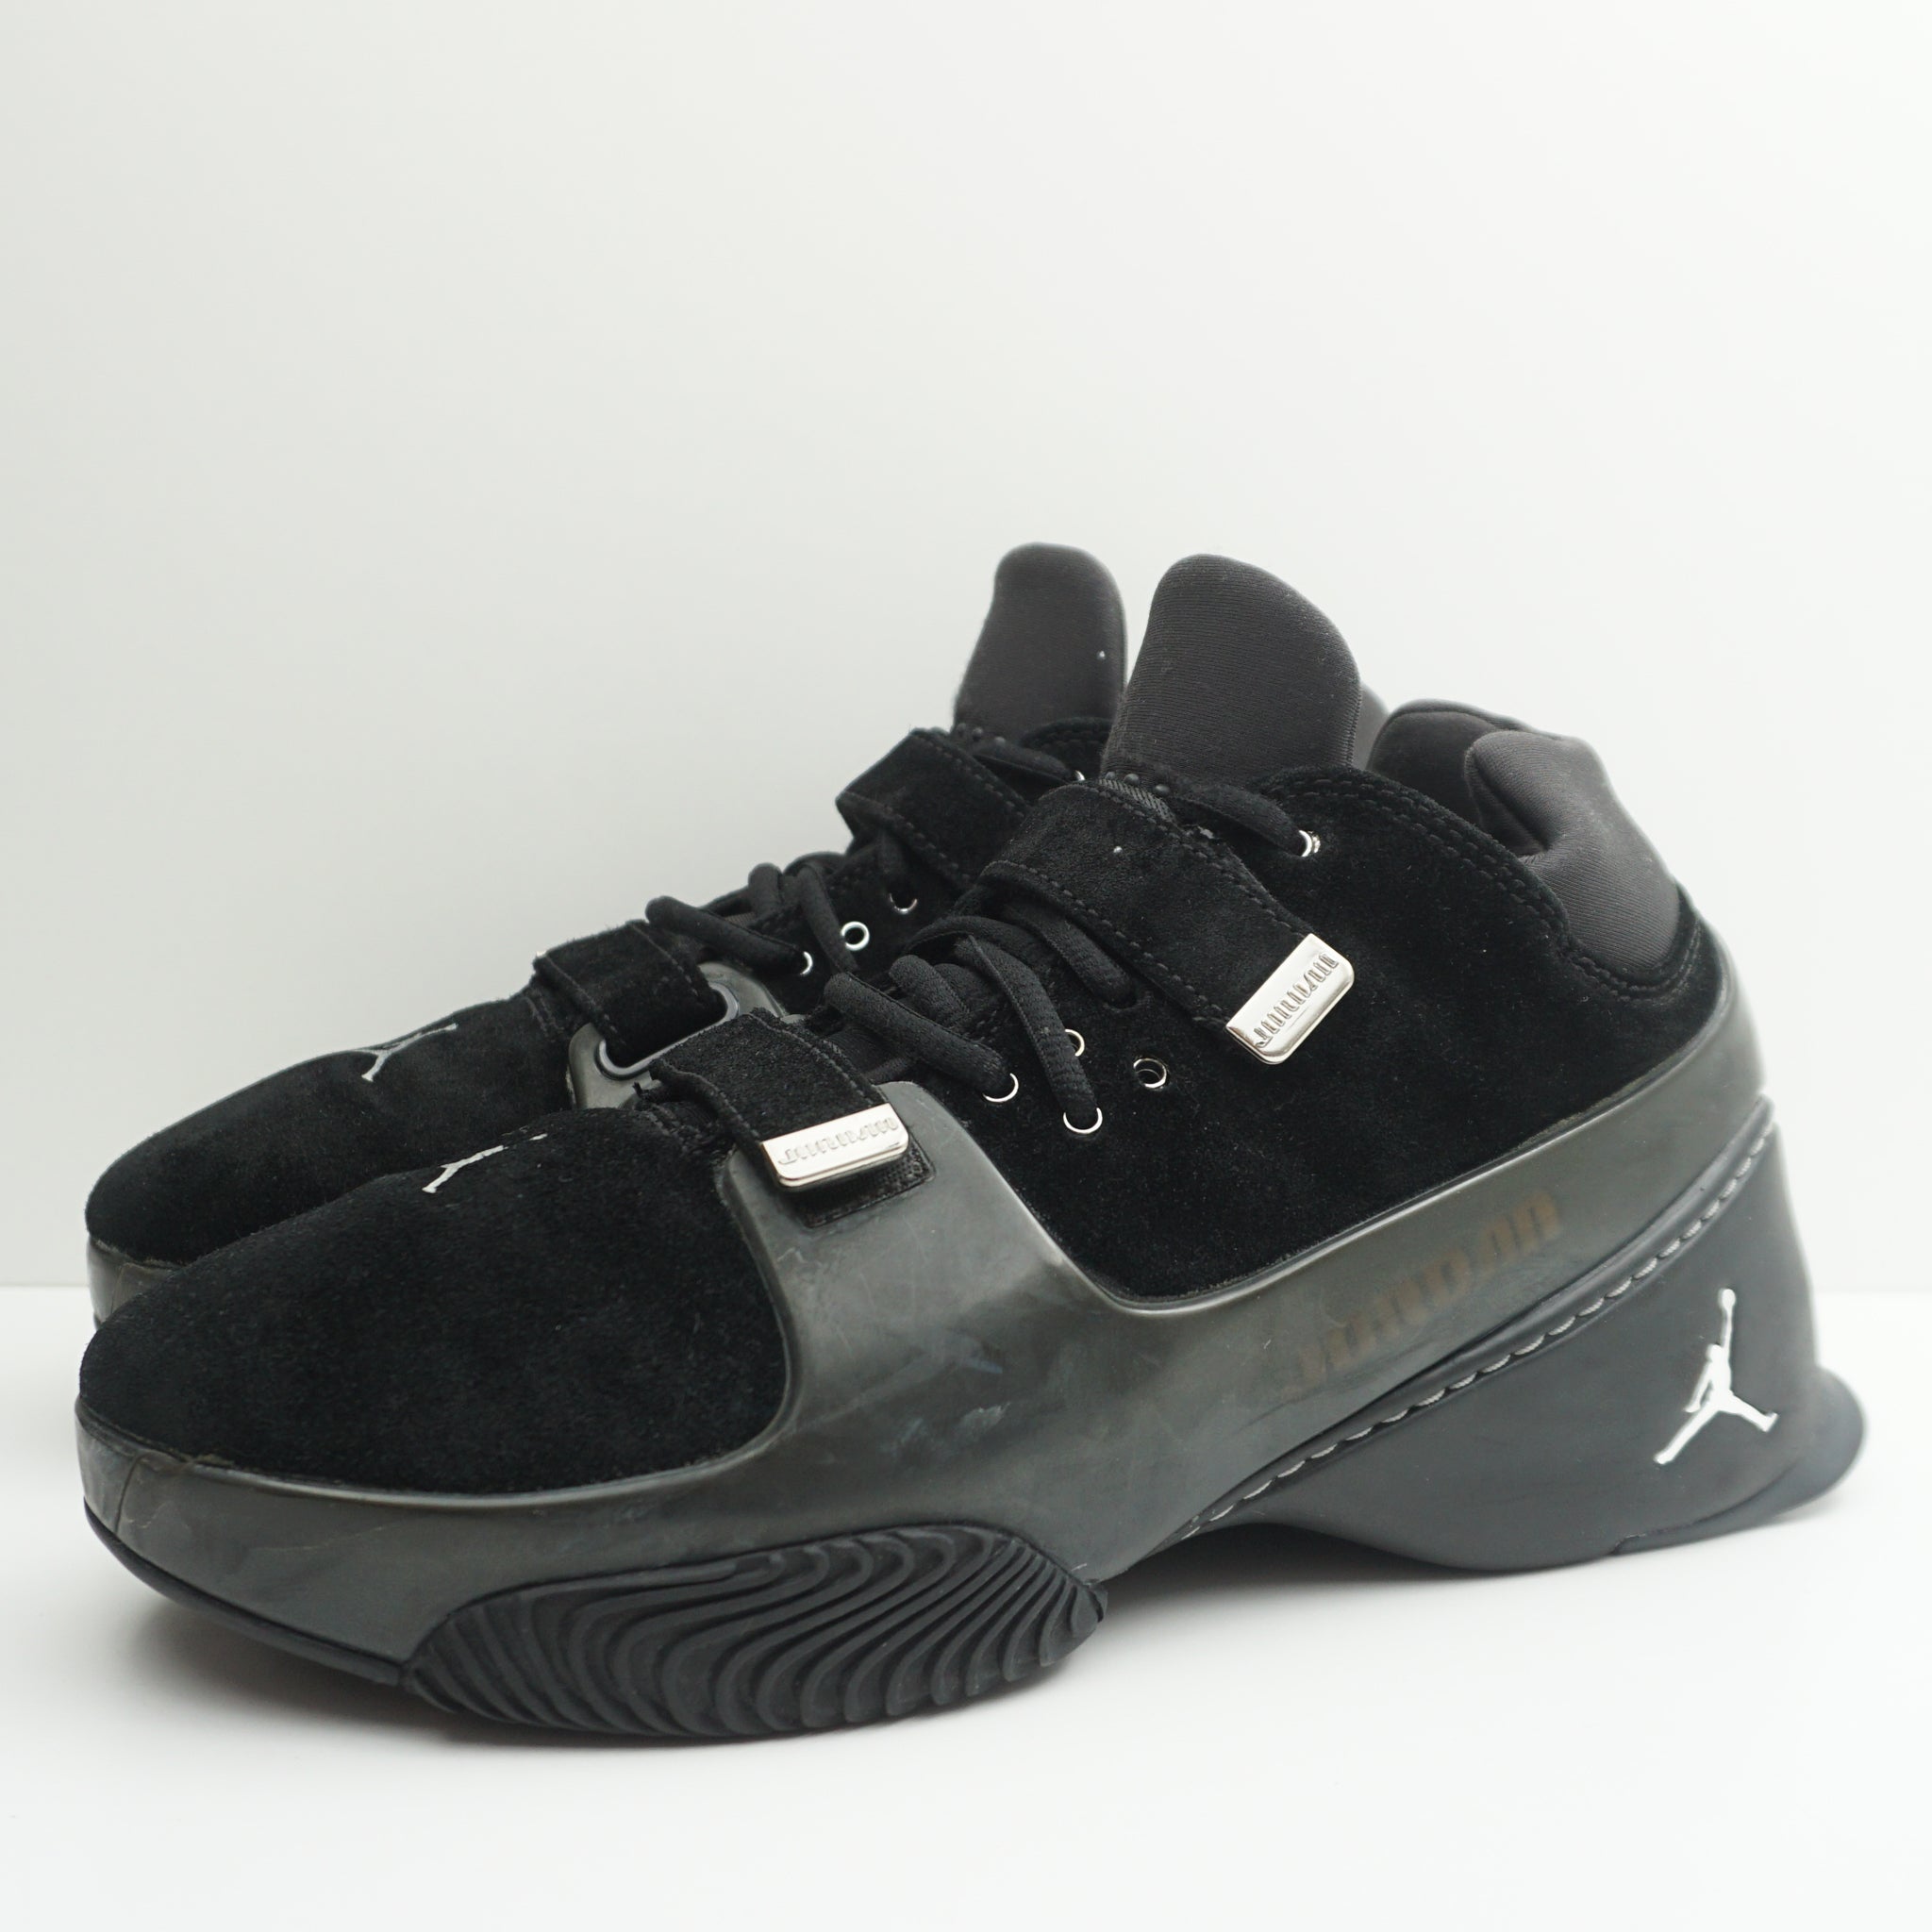 Nike Air Jordan Crush Black (2003)